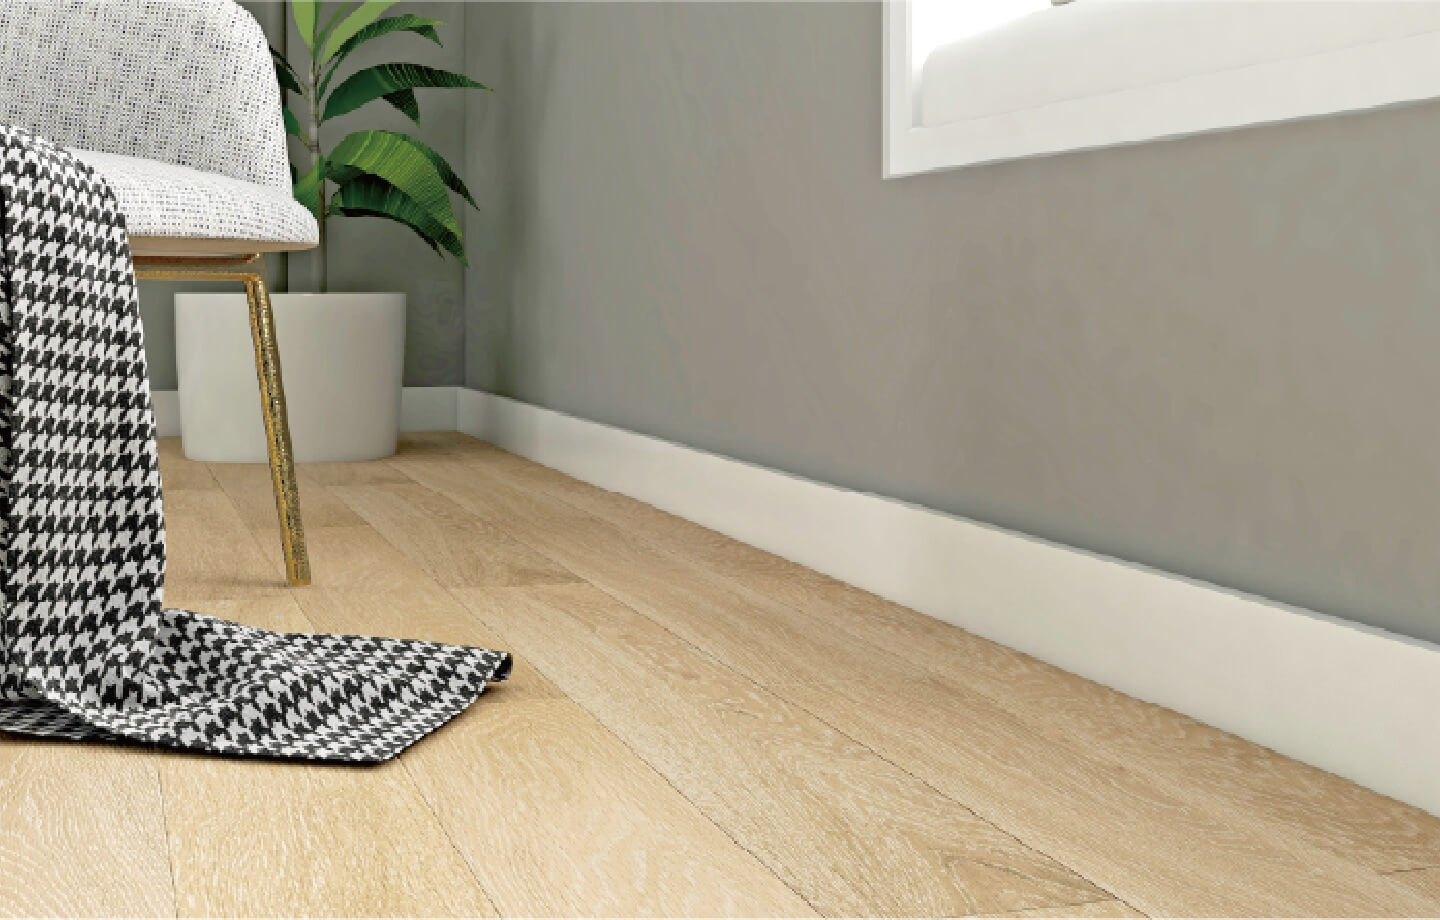 Un zócalo es una unión elegante entre el suelo y la pared.Este elegante y sobrio modelo se adapta a cualquier diseño interior, ofreciendo una armoniosa transición entre el pavimento y la pared.